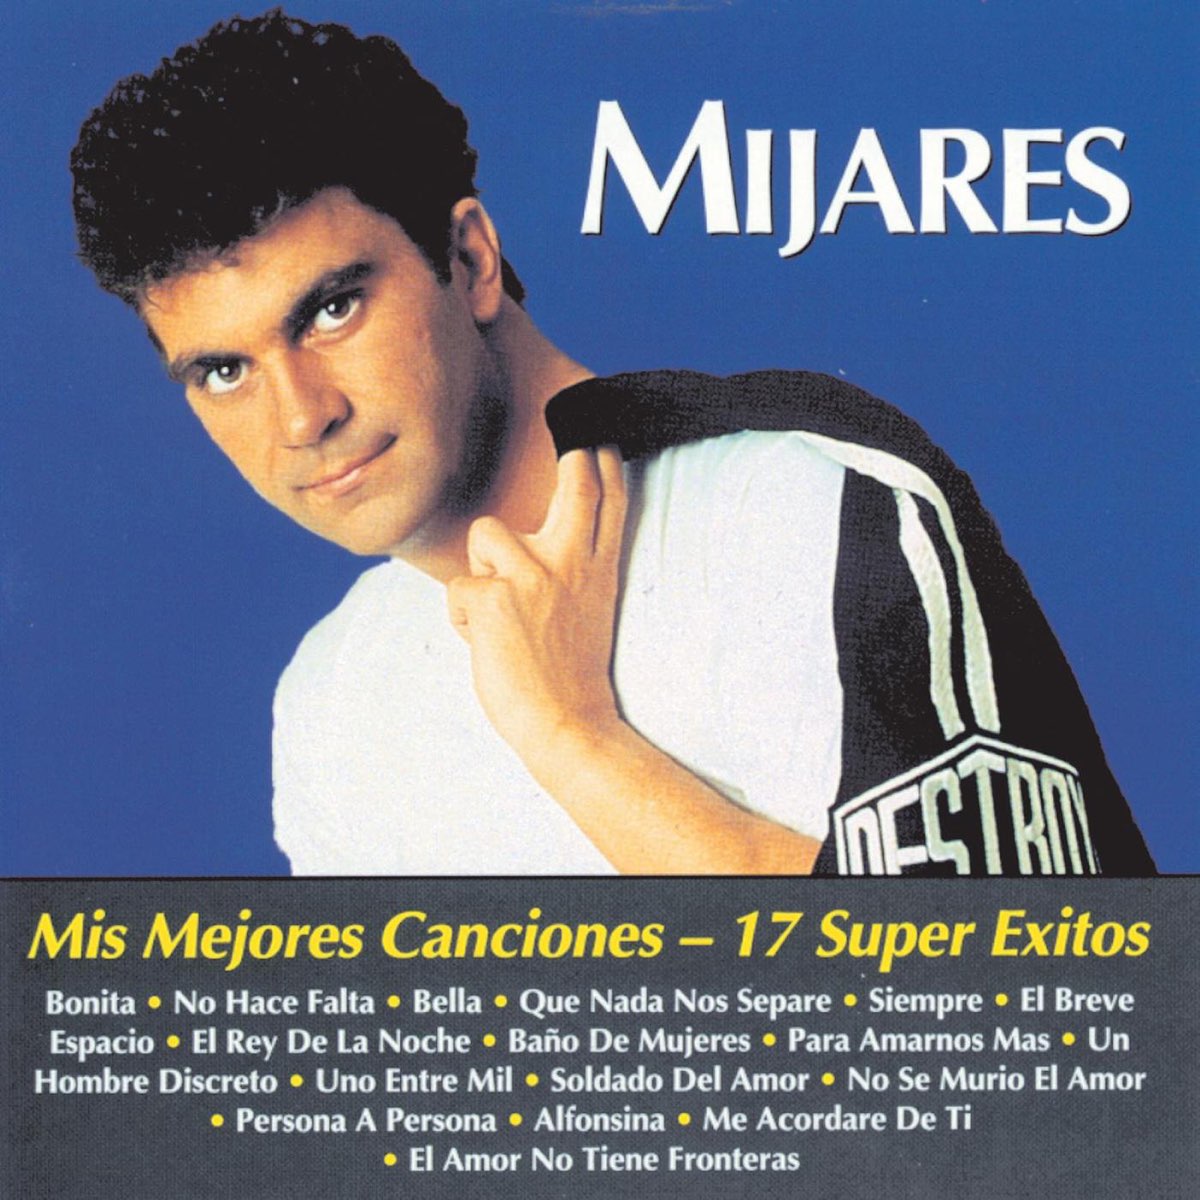 Mis Mejores Canciones-17 Super Éxitos by Mijares on Apple Music